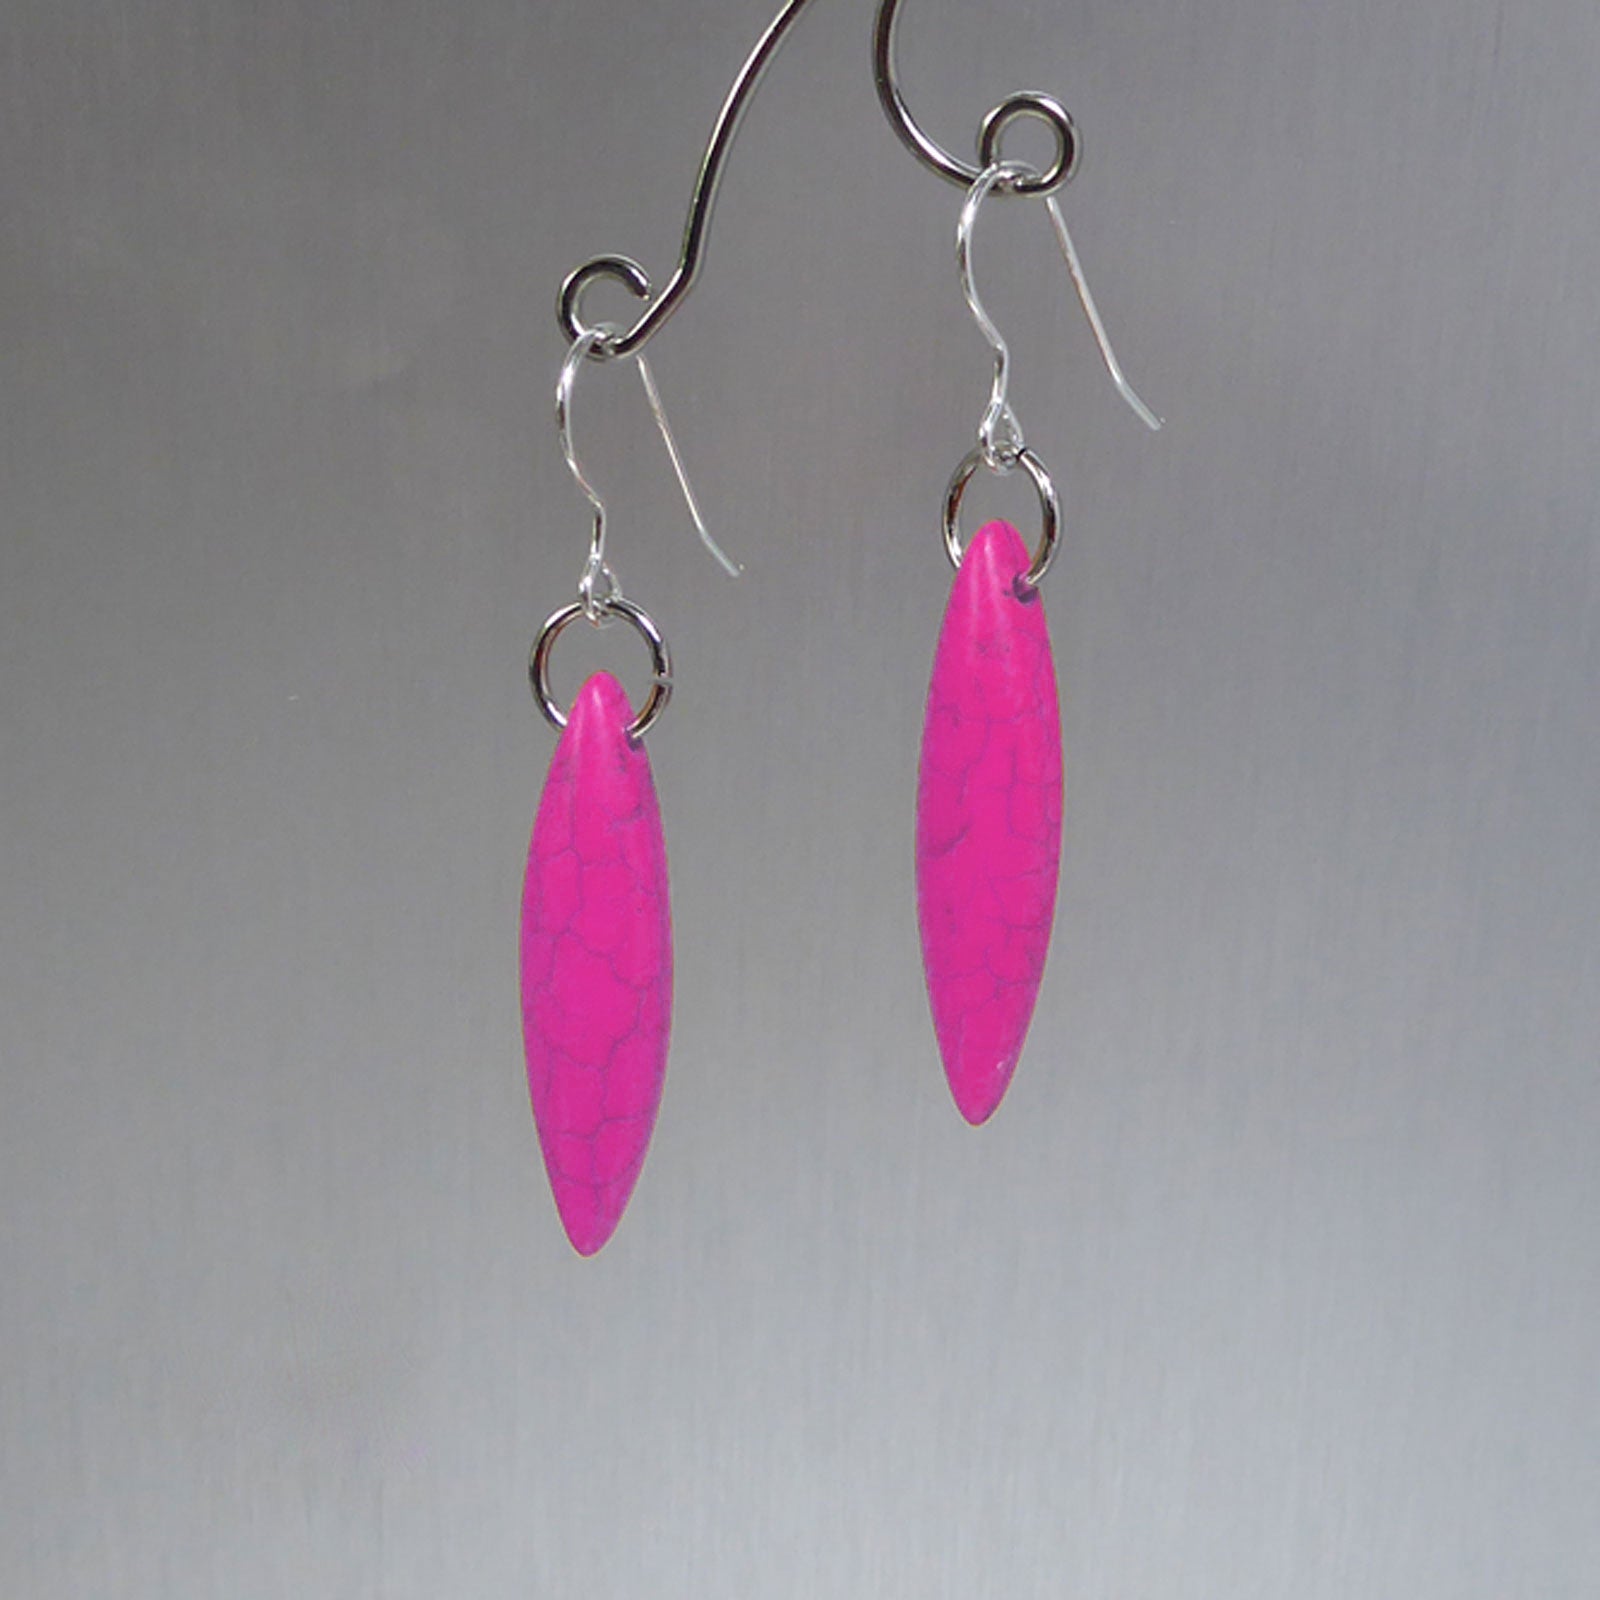 Pink elliptical howlite earrings